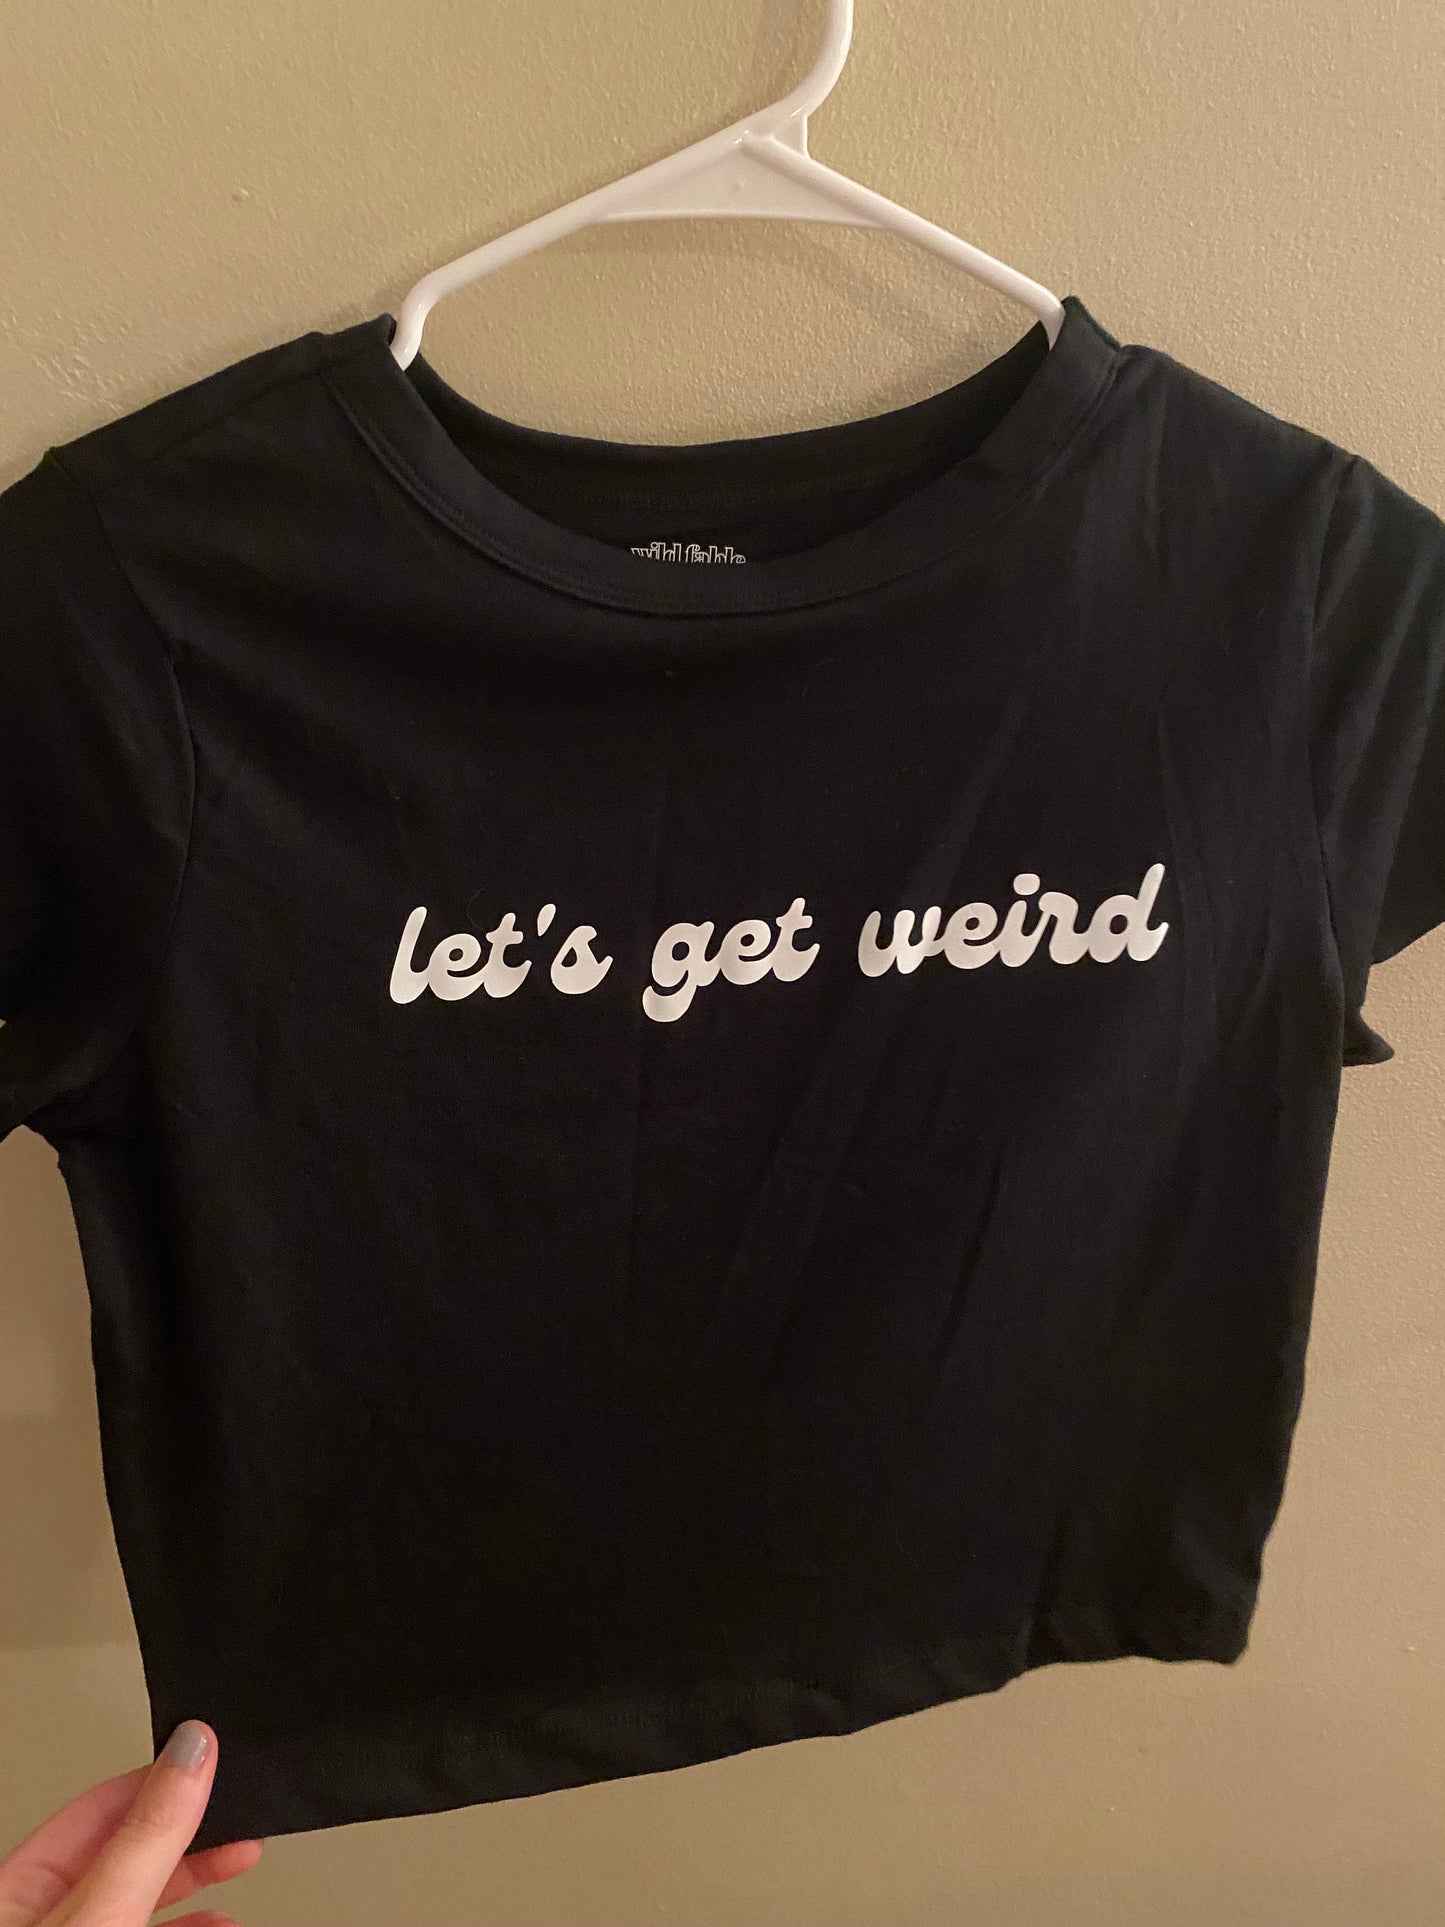 Let's Get Weird T-shirt, Size Medium Hot Cropped Tee, Graphic Tee, Graphic Shirt, Lettered t-shirt, Summer Crop Top, Keep It weird